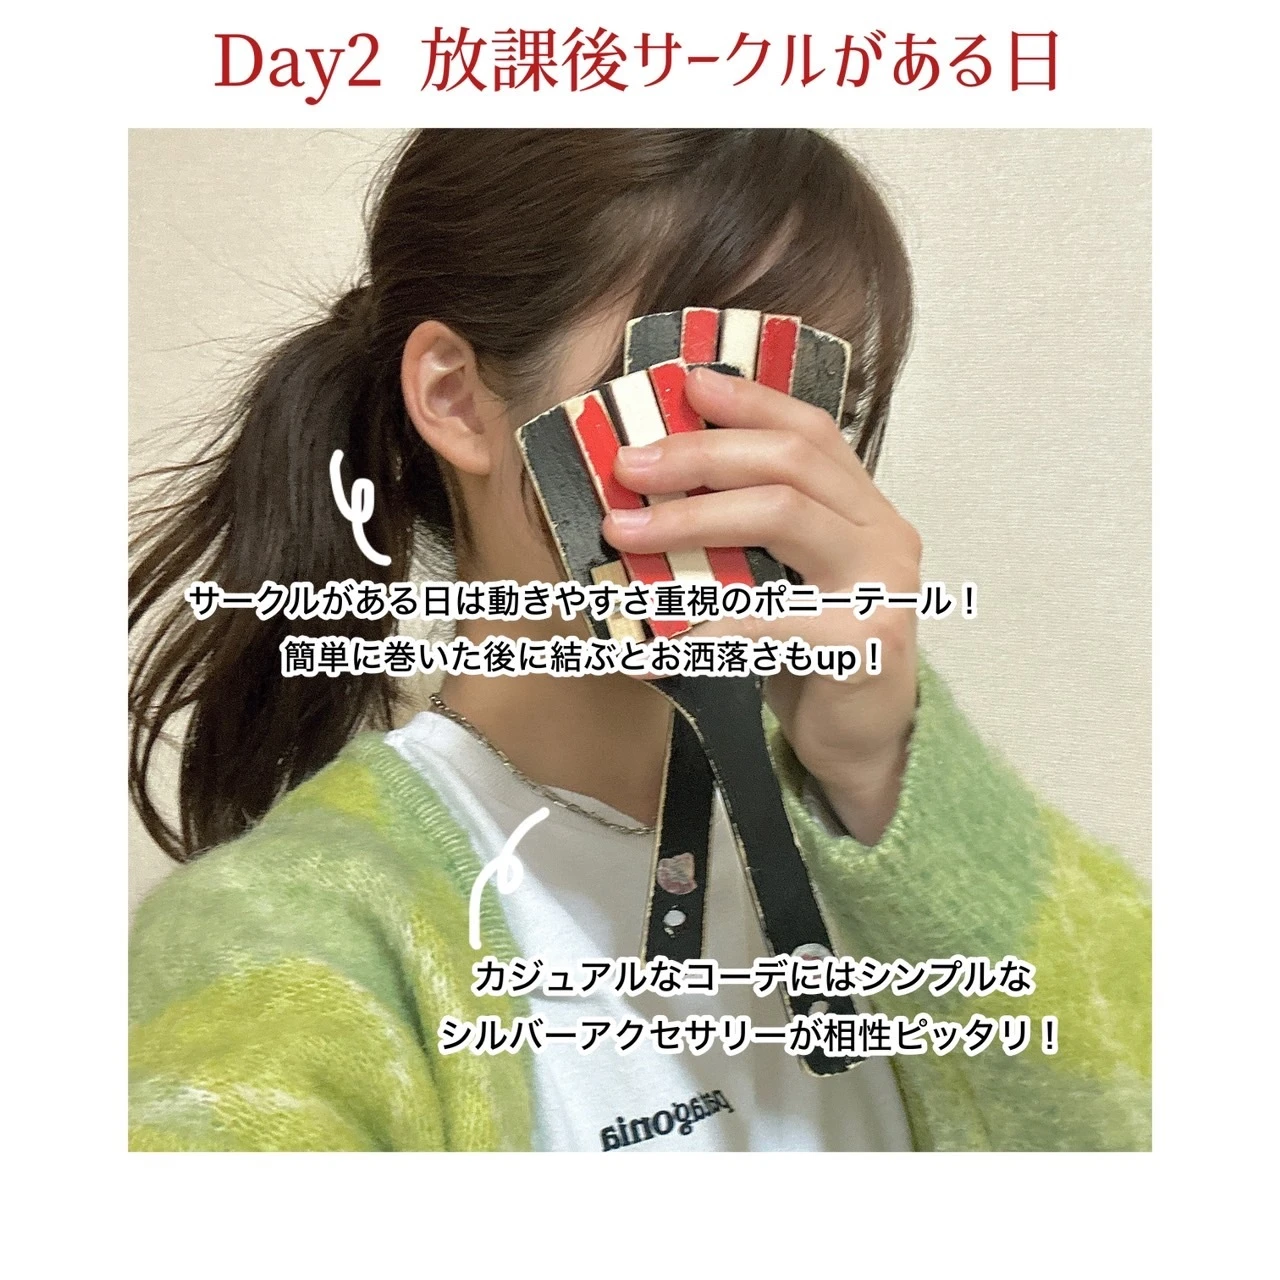 【Day2】顔周りのポイント紹介画像